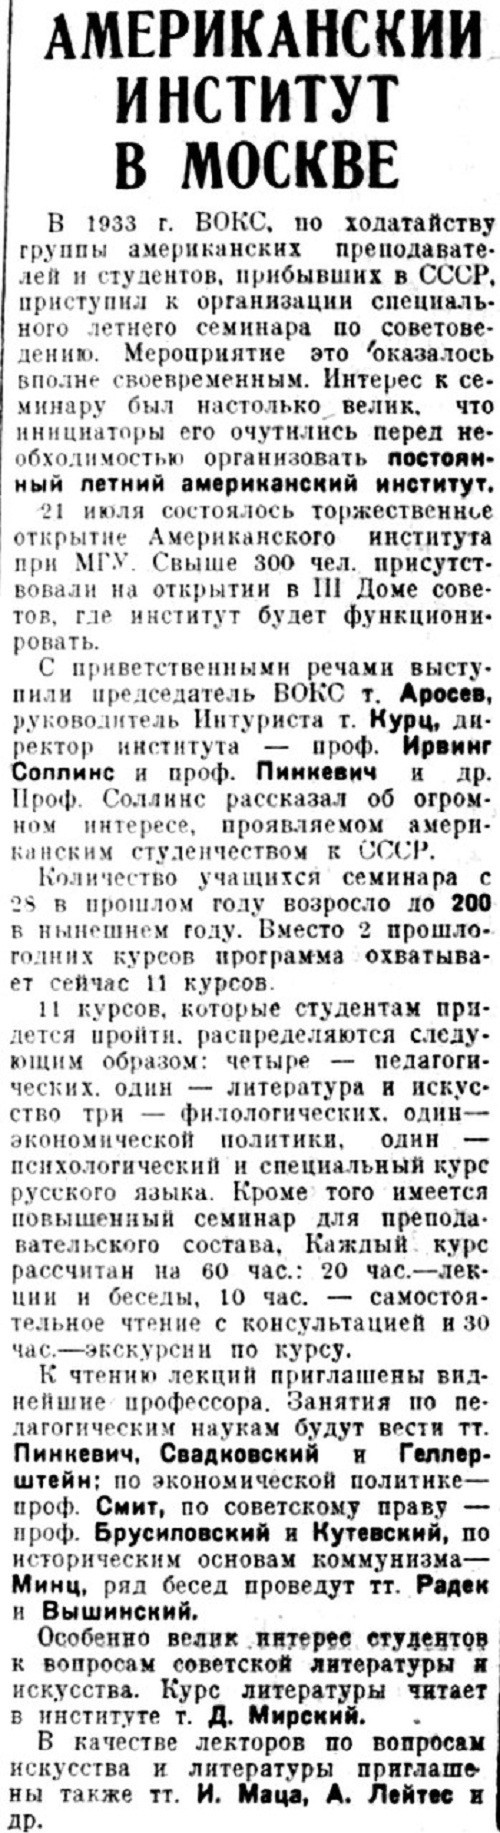 «Литературная газета», 24 июля 1934 г.